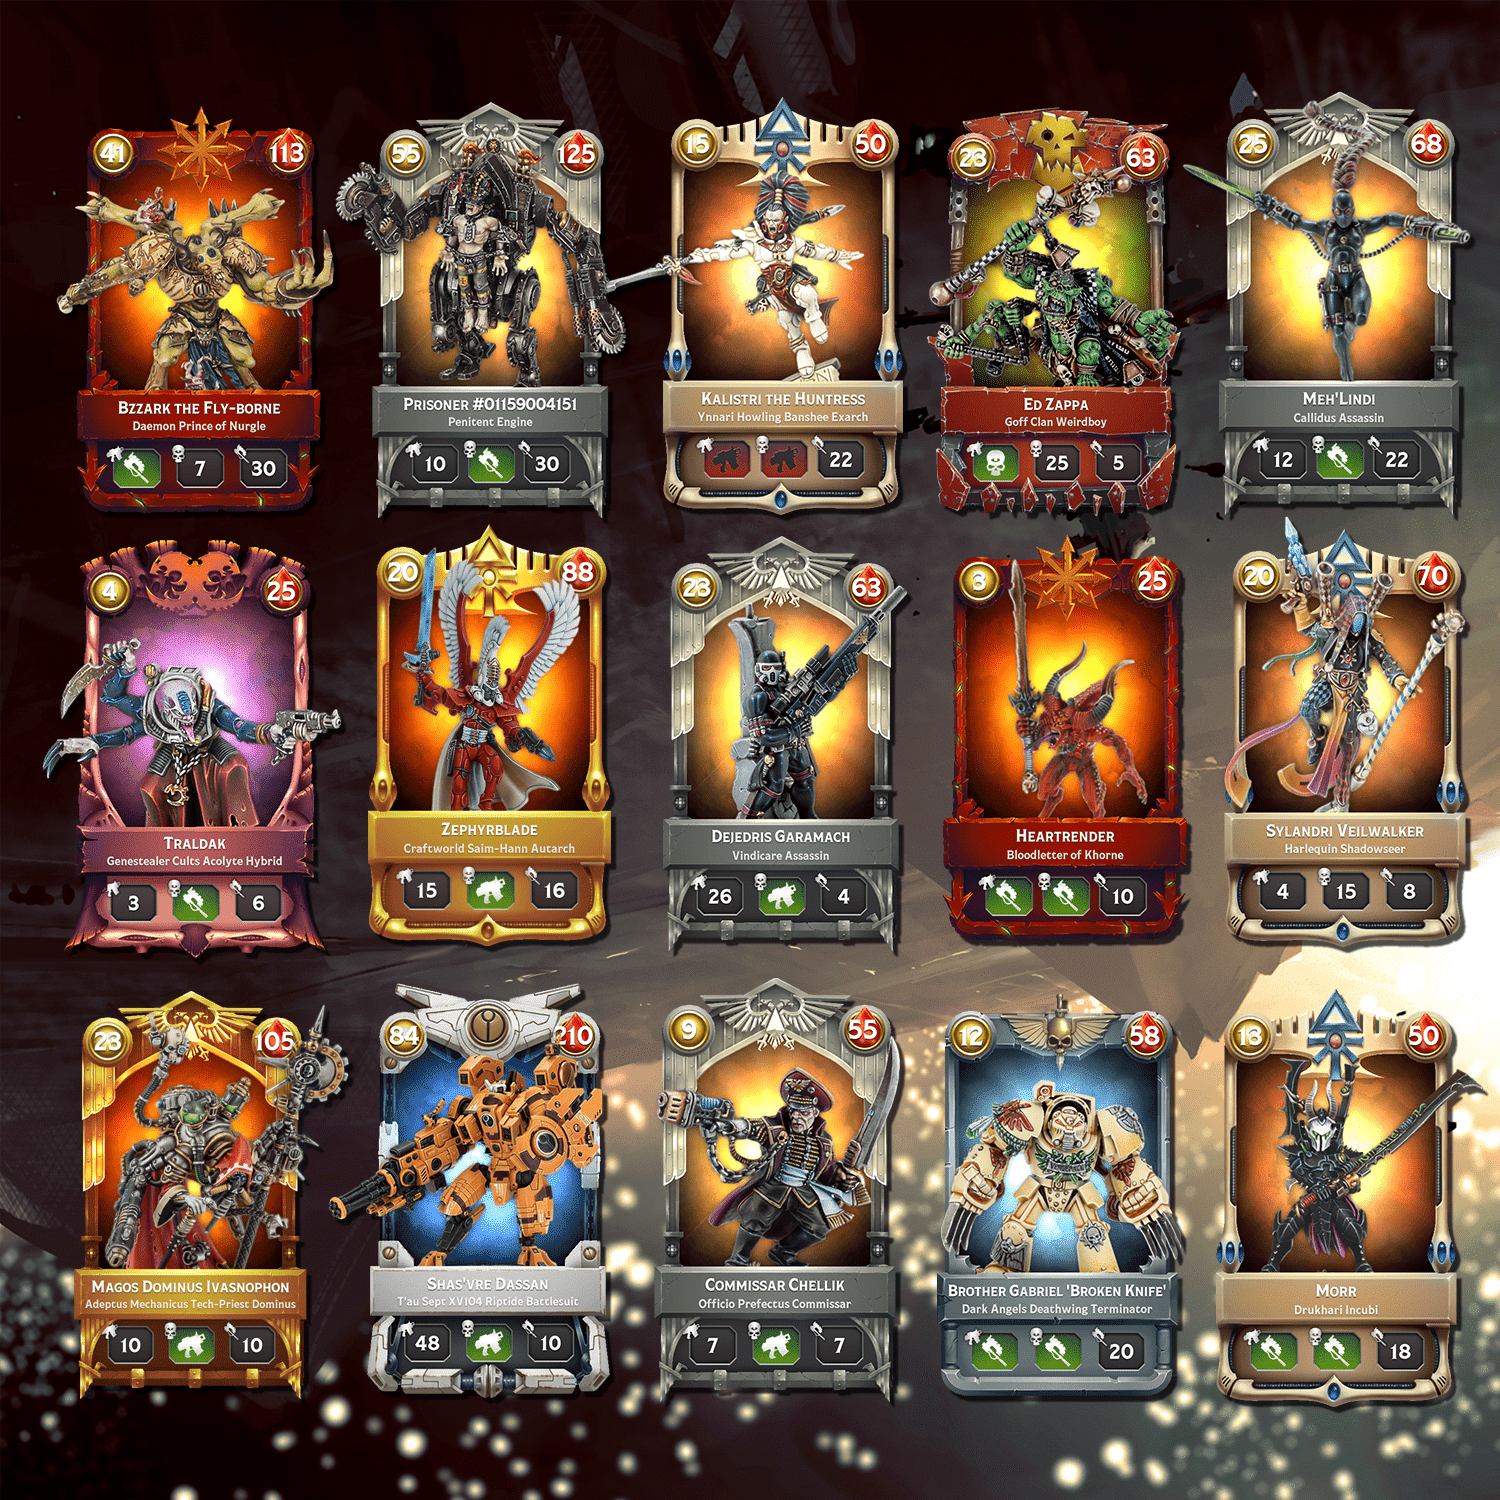 Warhammer cards. Warhammer Combat Cards. Warhammer 40000 Combat Cards колоды. Warhammer Combat Cards 40k Edition. Warhammer Combat Cards - 40k.